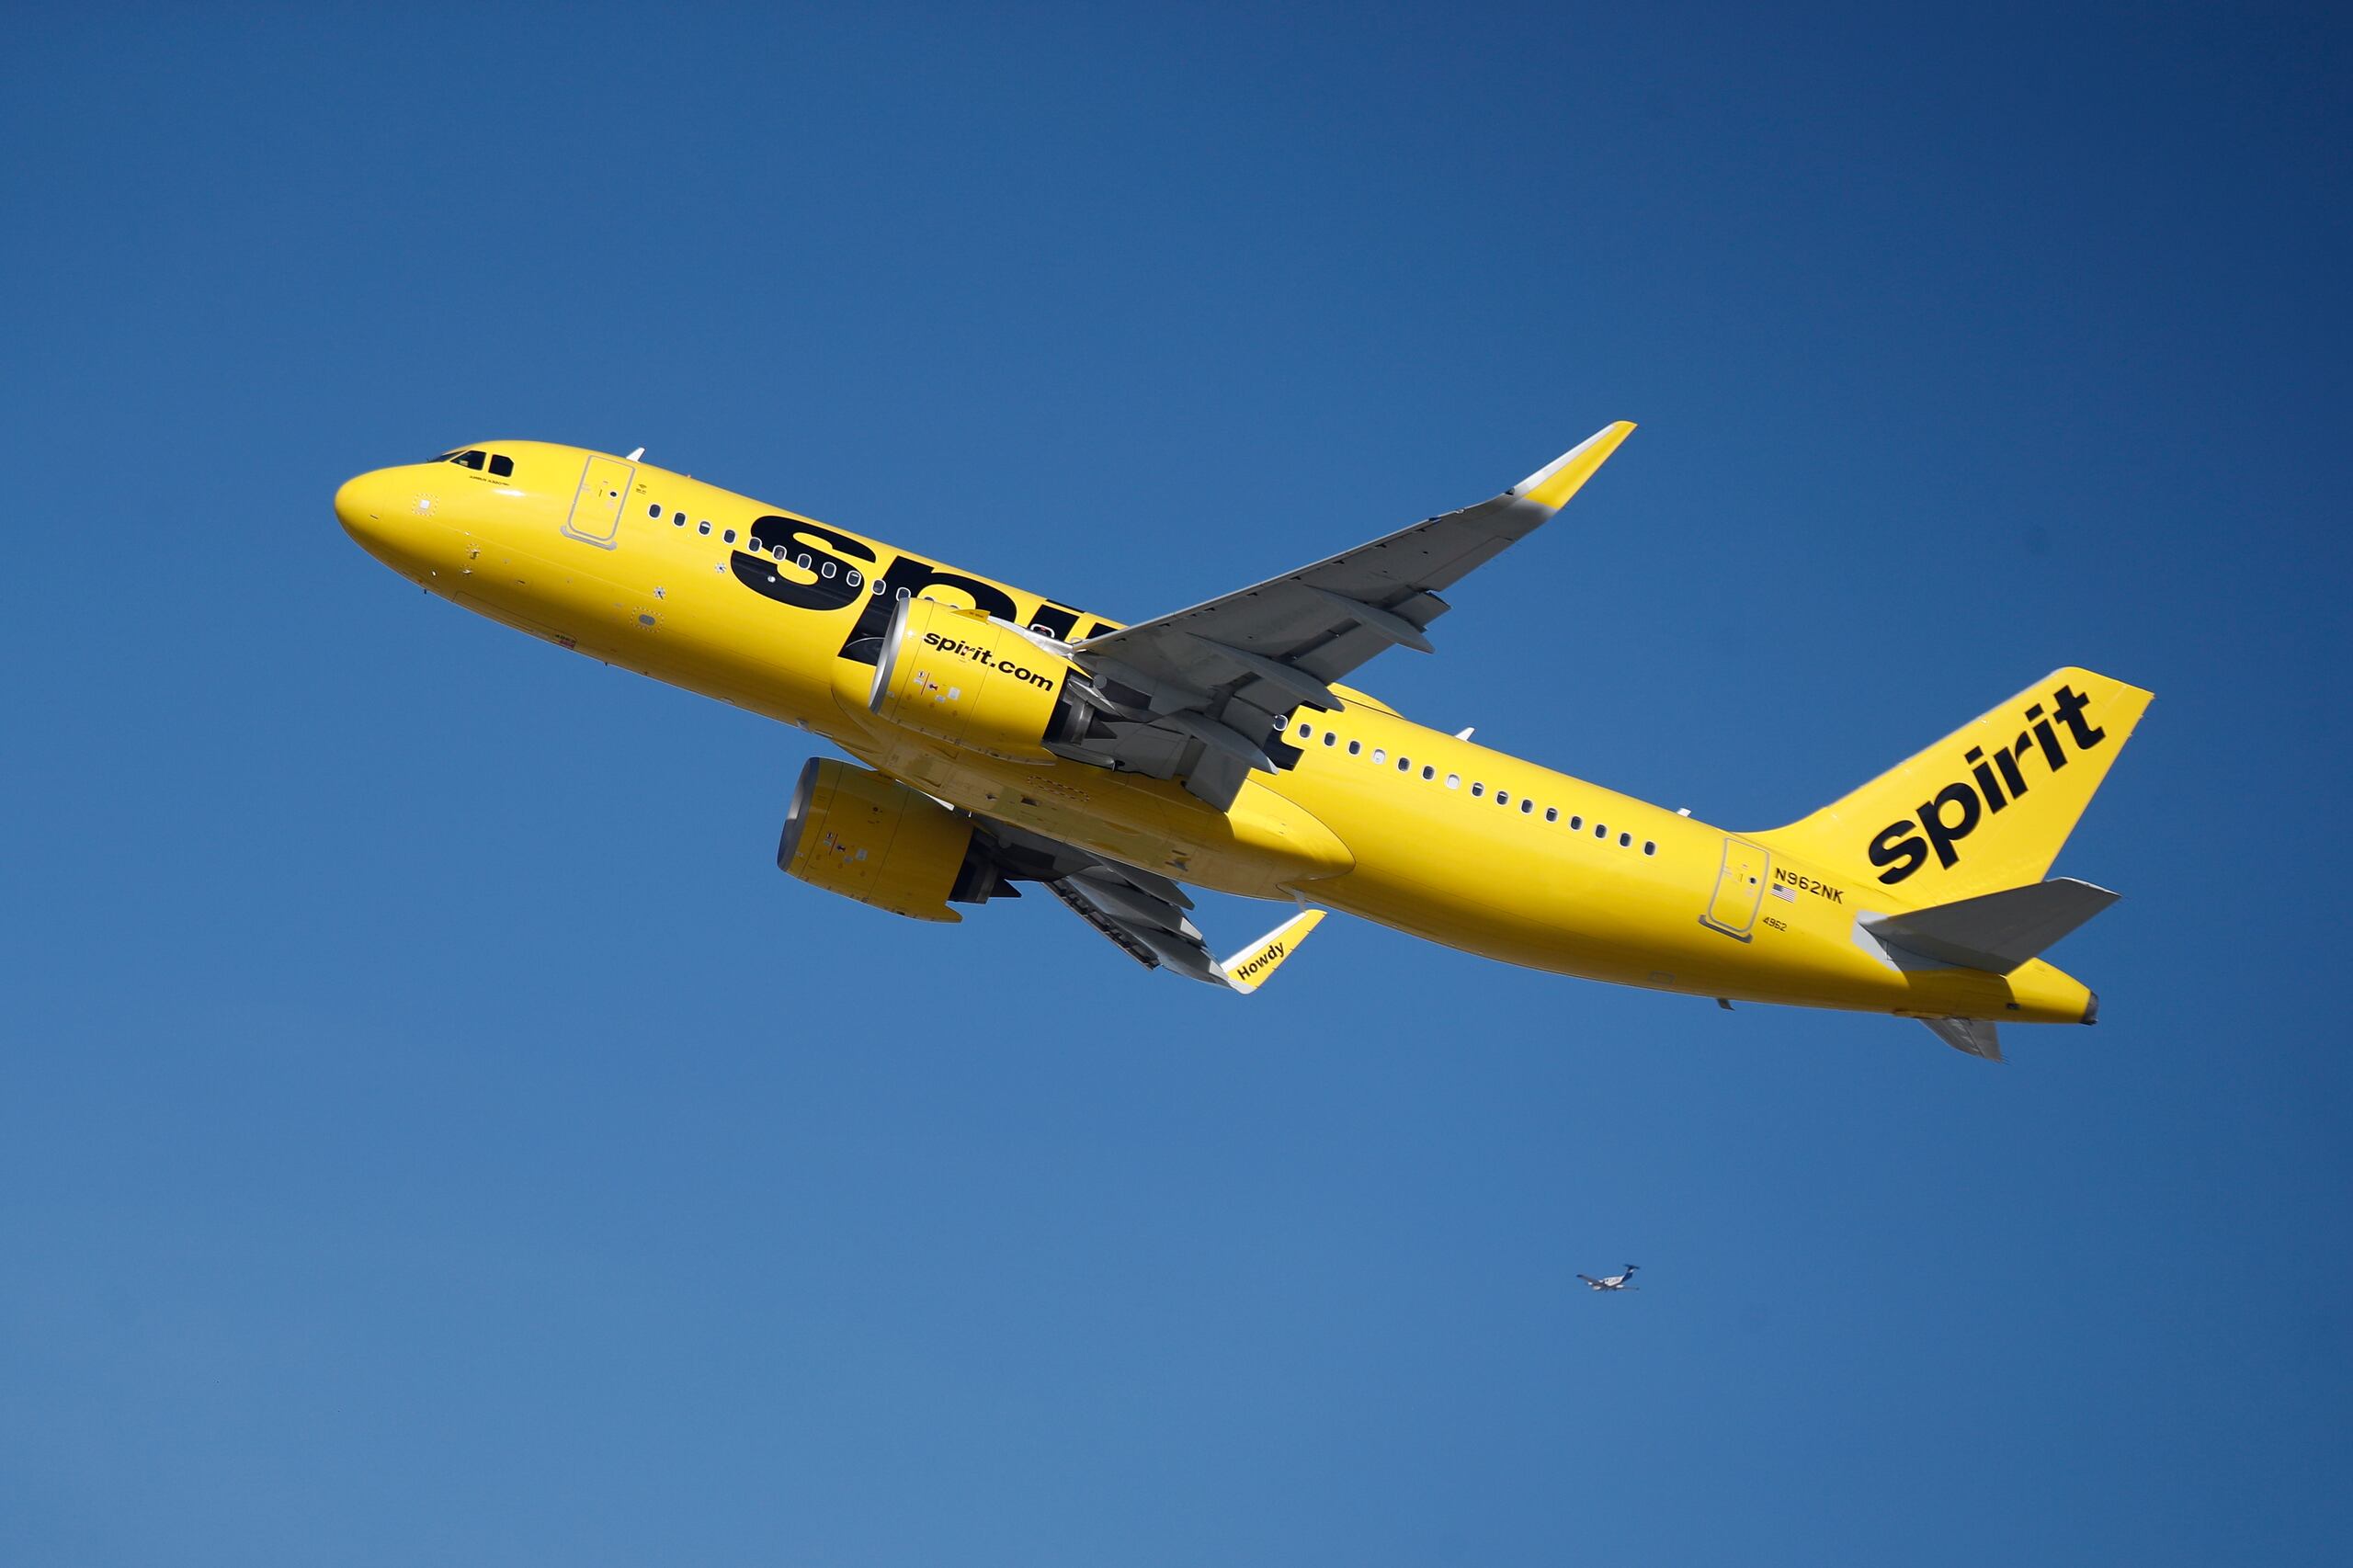 Según un comunicado de Spirit, la aerolínea “evaluará minuciosamente el avión”.